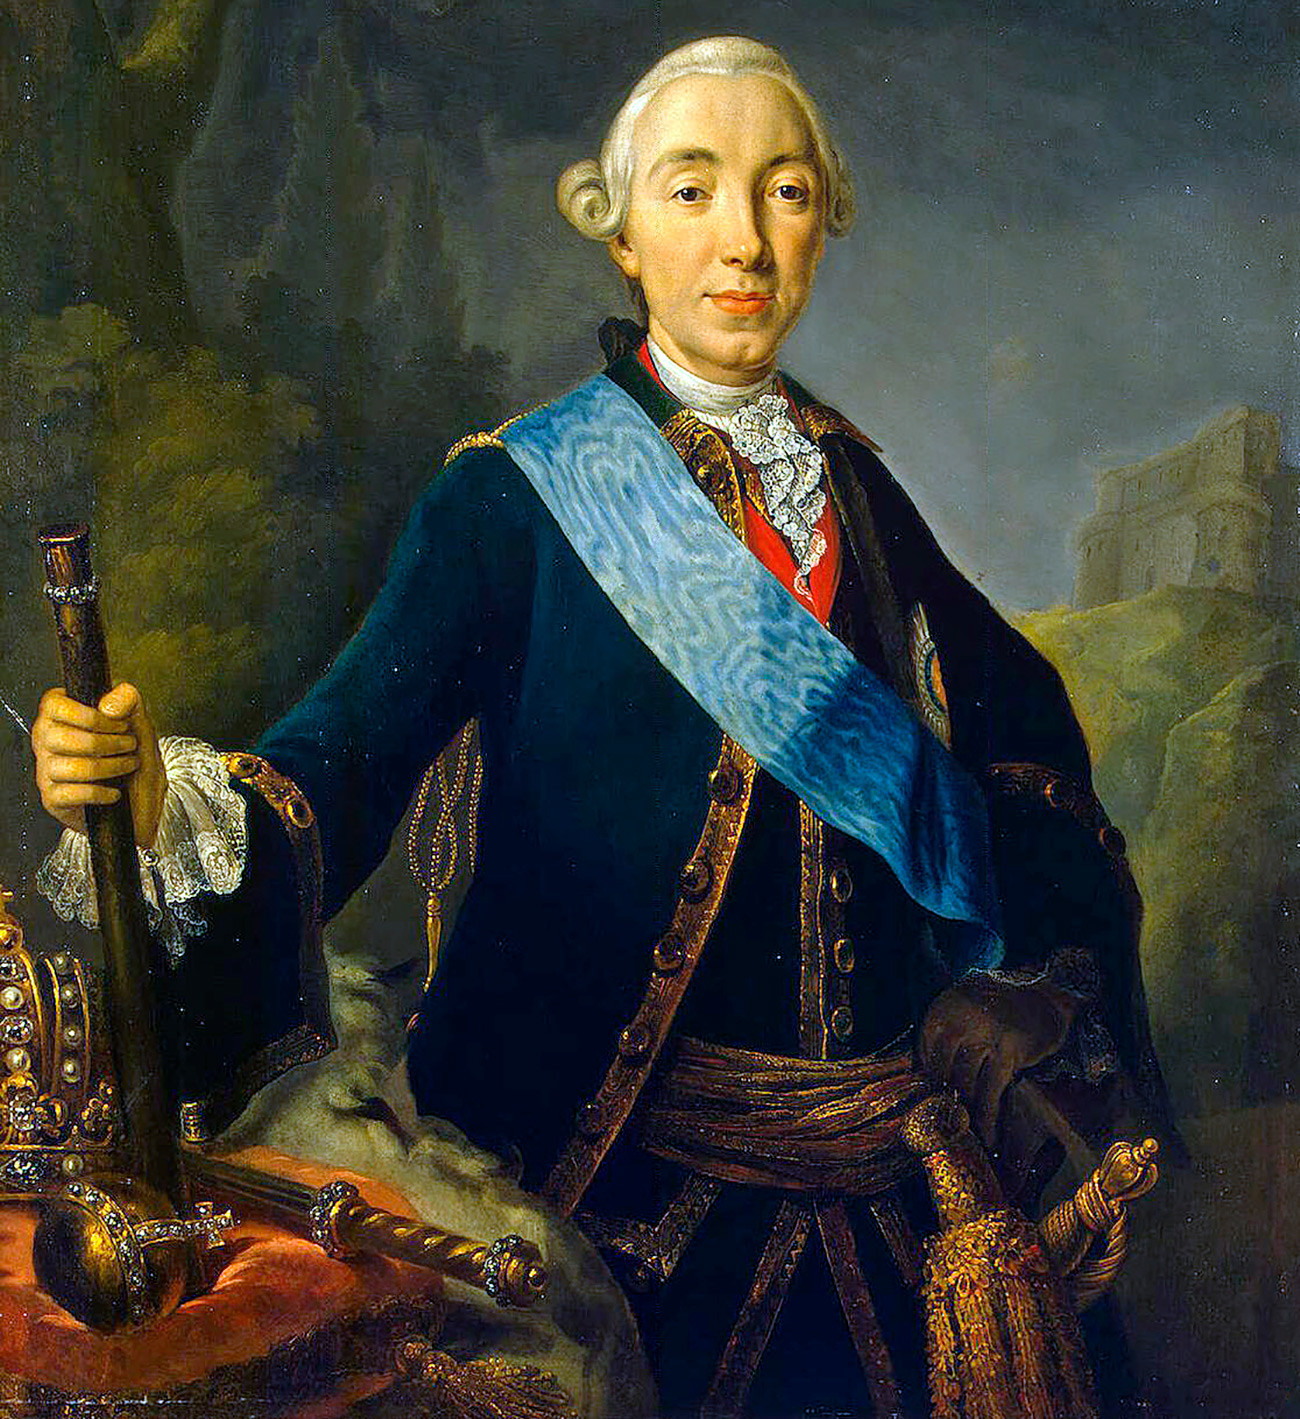 Pierre III